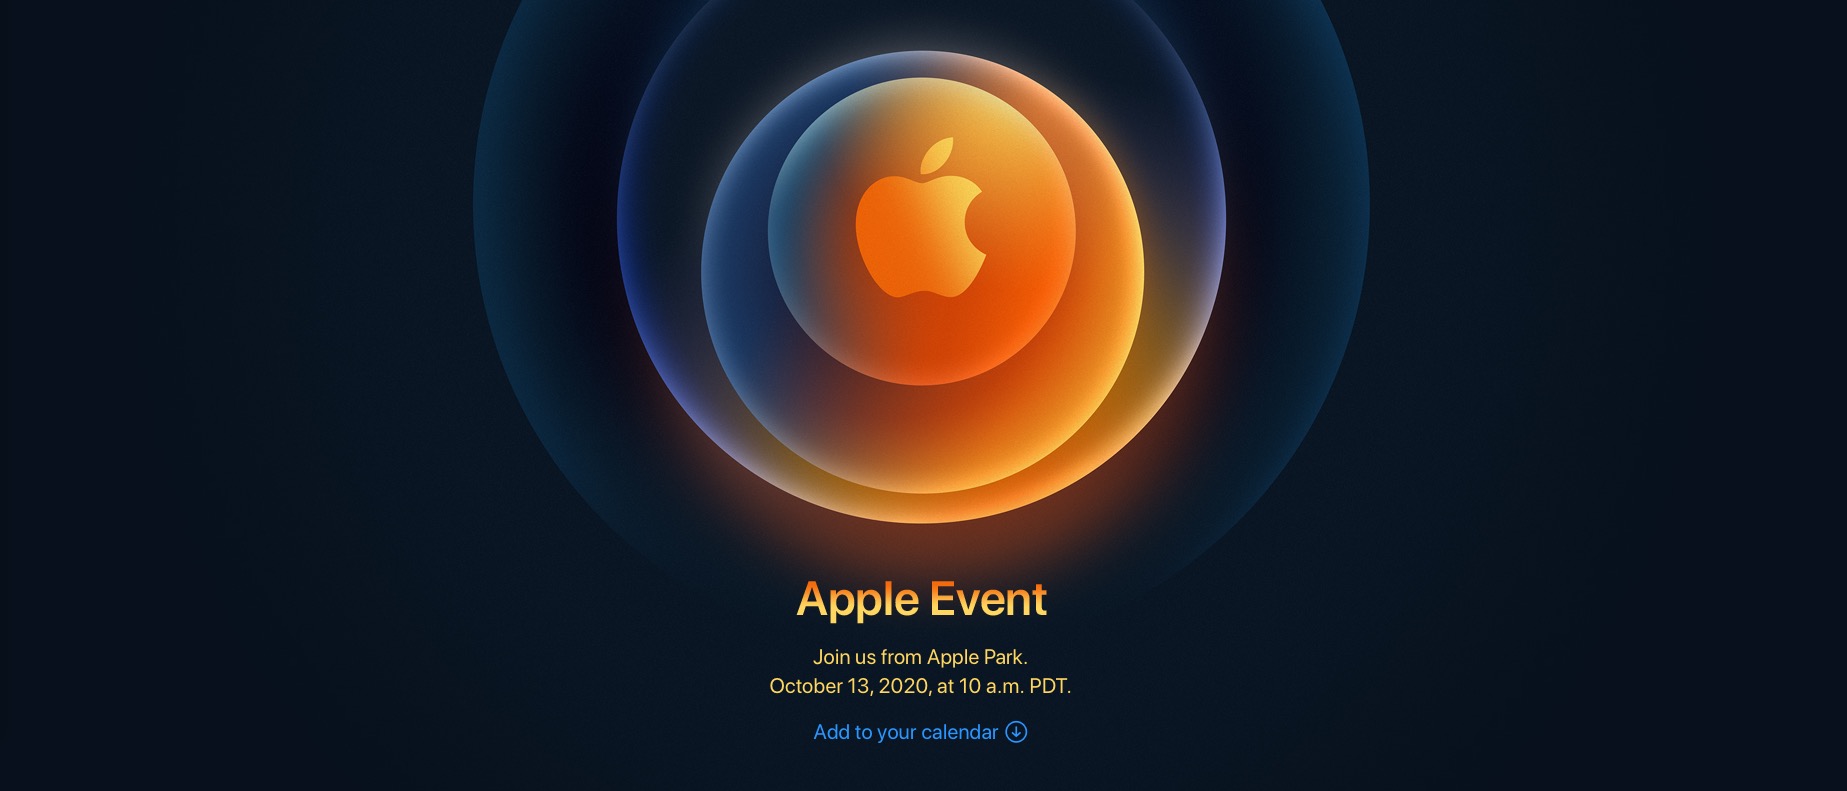 Apple xác nhận sự kiện ra mắt iPhone 12 vào ngày 14/10 sắp tới theo giờ Việt Nam